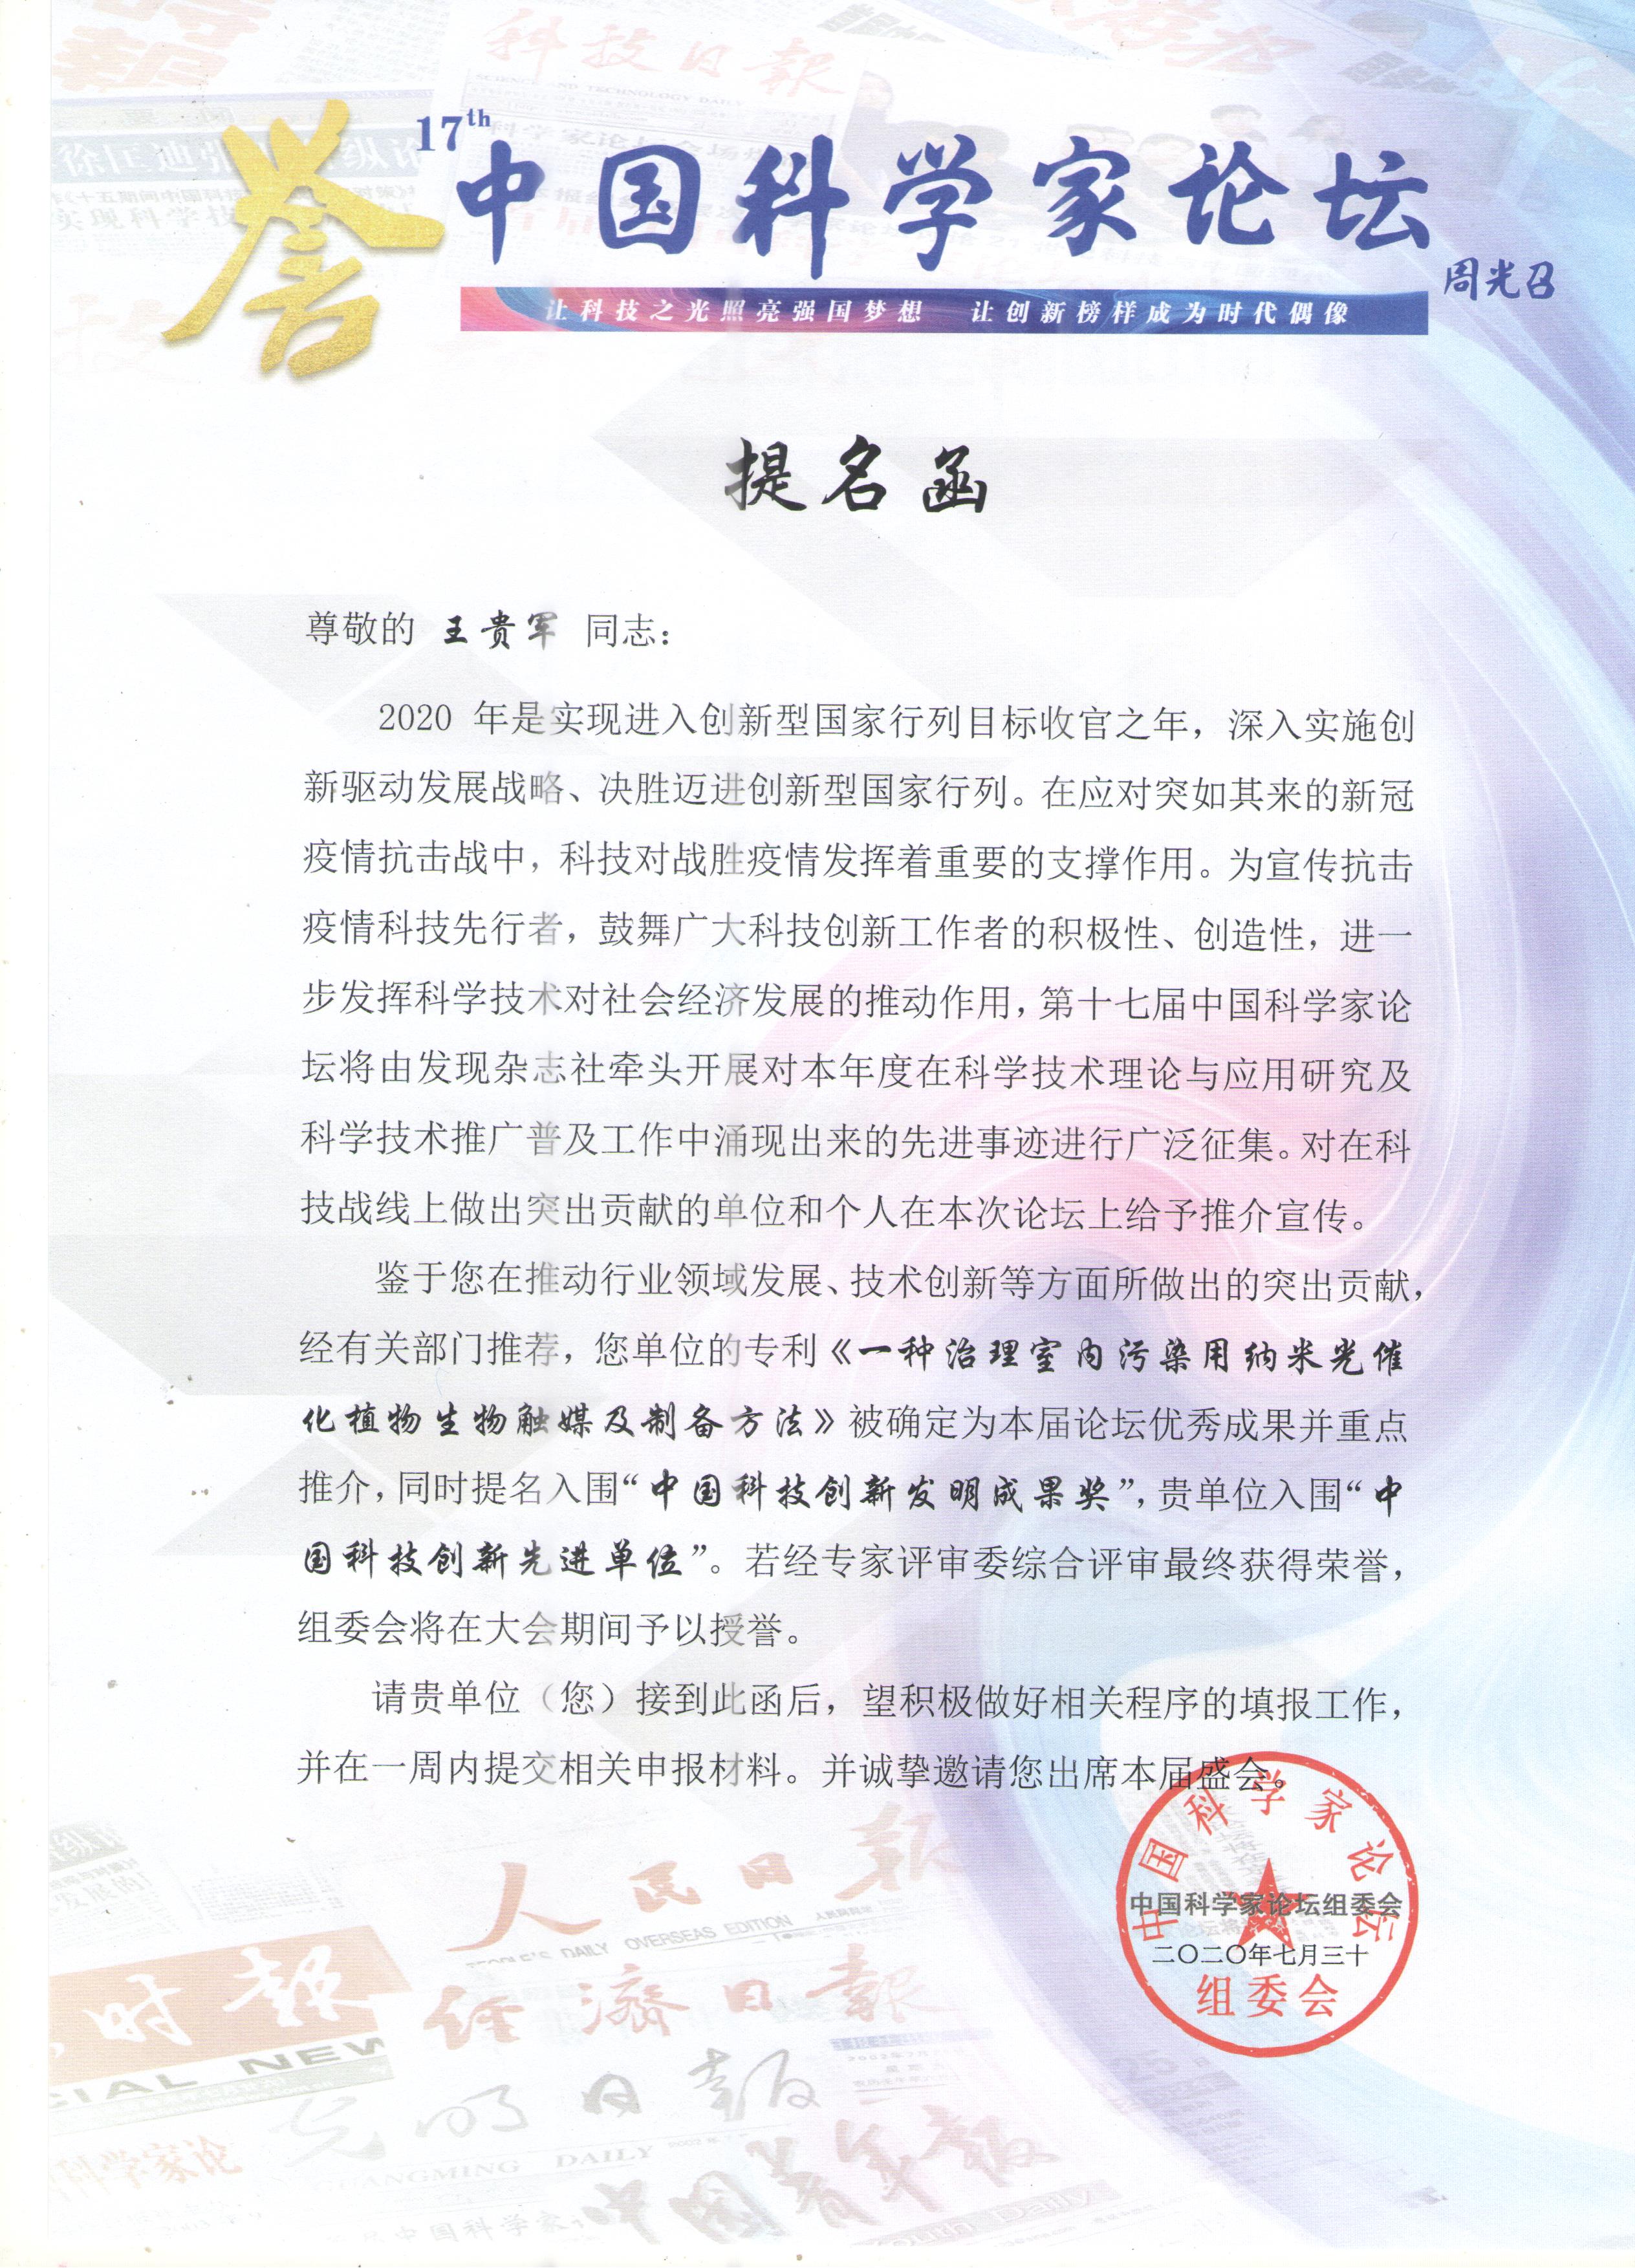 盈彩(中国)股份有限公司-官网入围“中国科技创新先进单位”